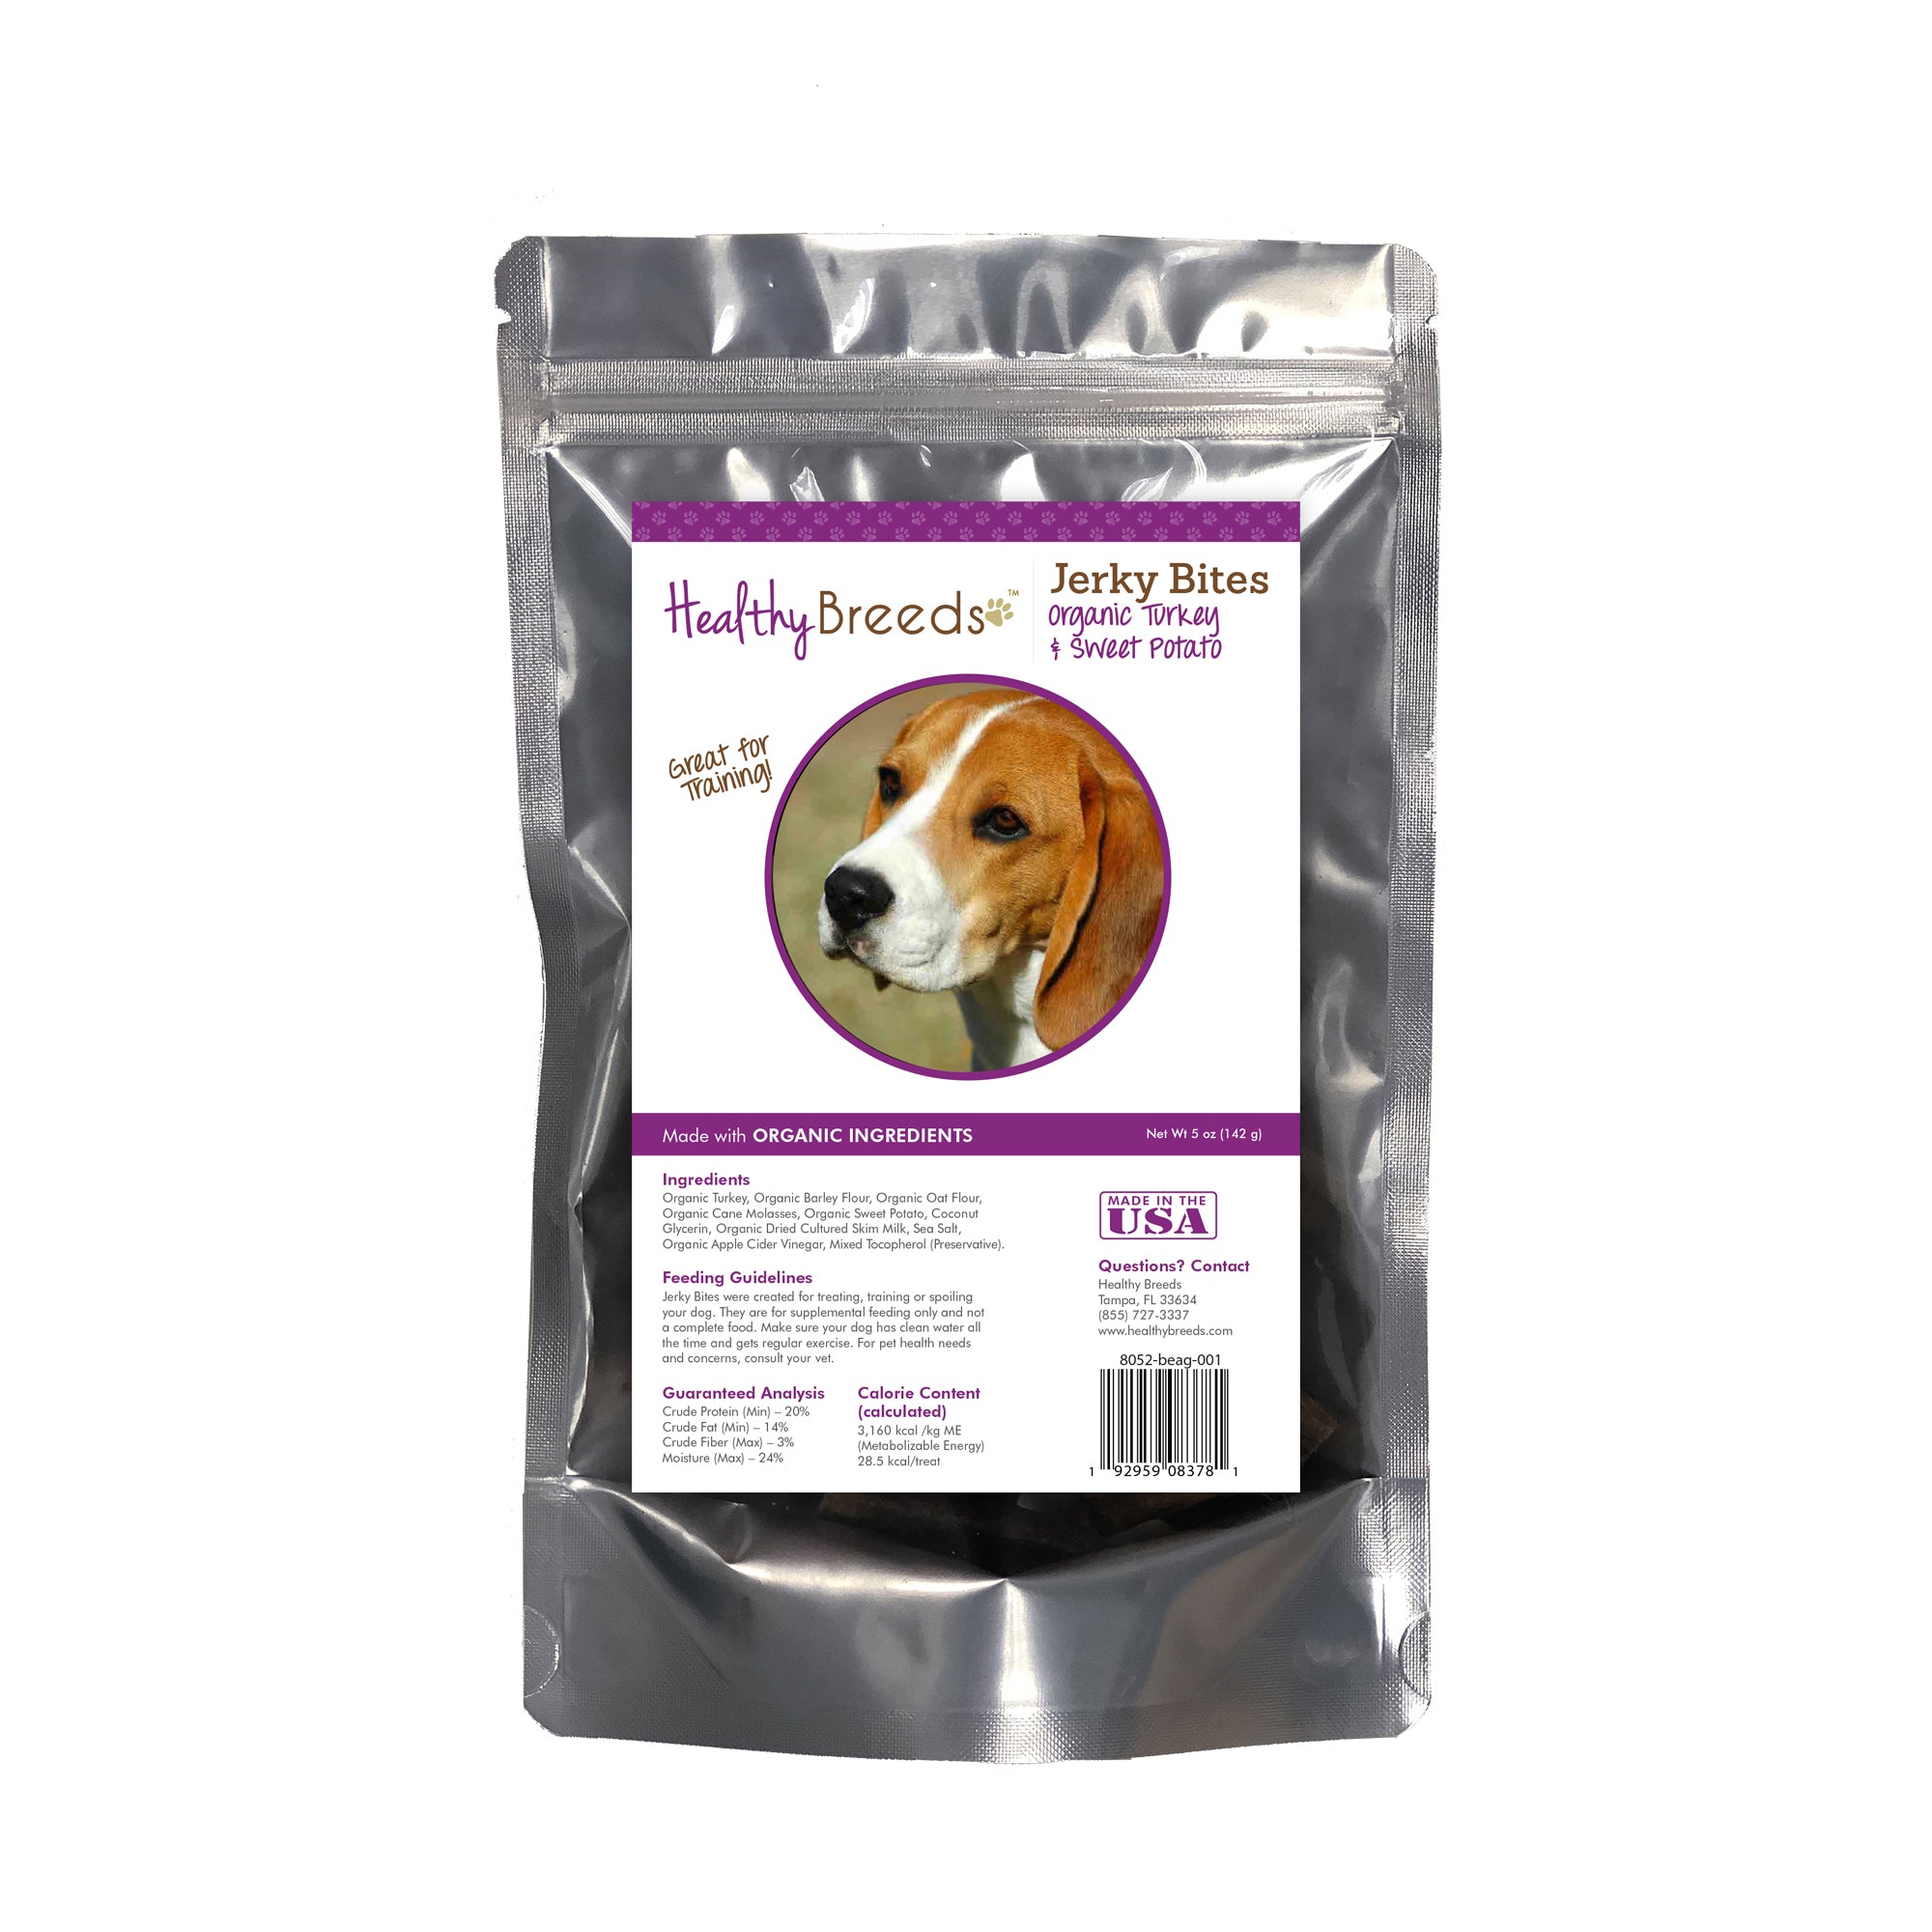 Beagle Jerky Bites Turkey & Sweet Potato Recipe Dog Treats 5 oz